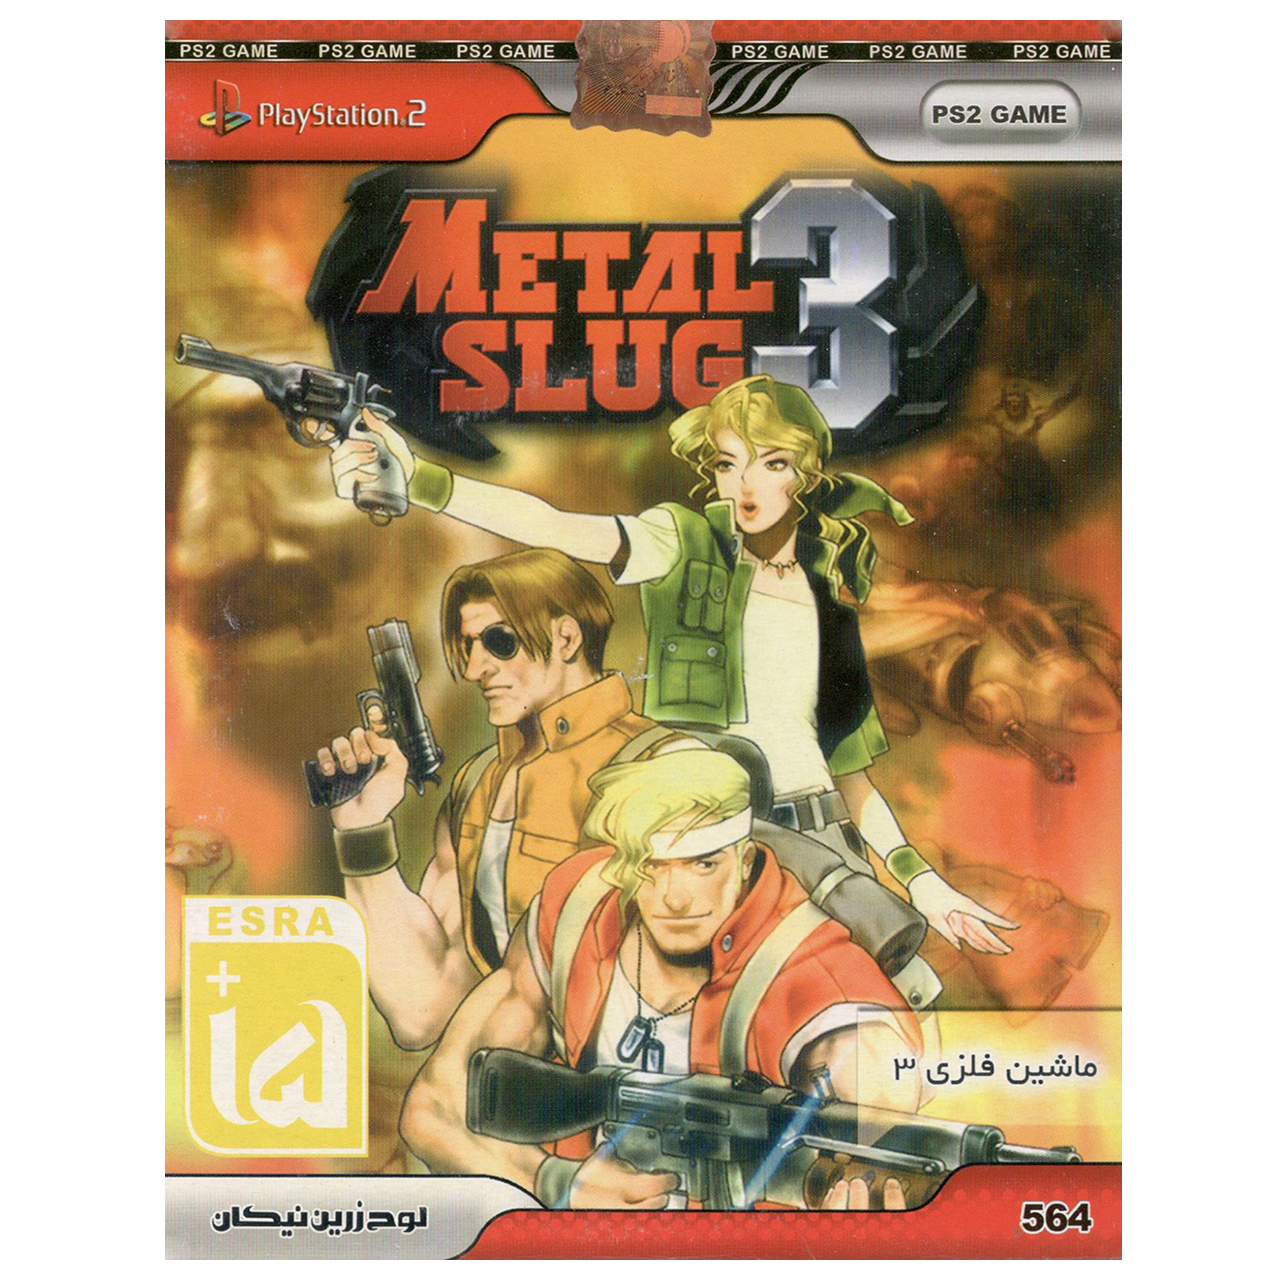 بازی Metal Slug 3 مخصوص پلی استیشن 2